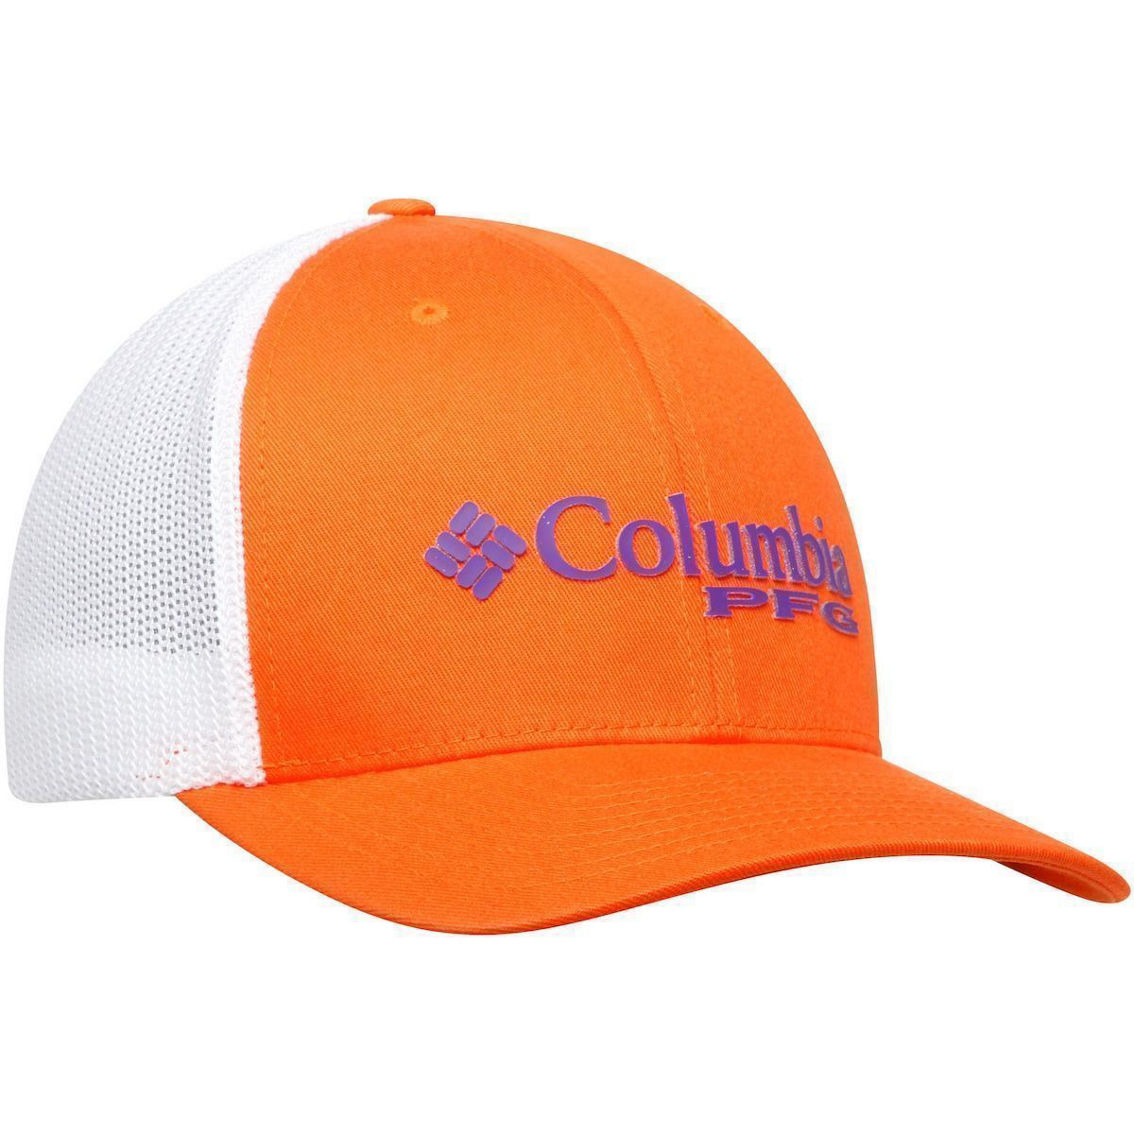 Men's Columbia Orange Clemson Tigers Collegiate PFG Flex Hat - Image 4 of 4